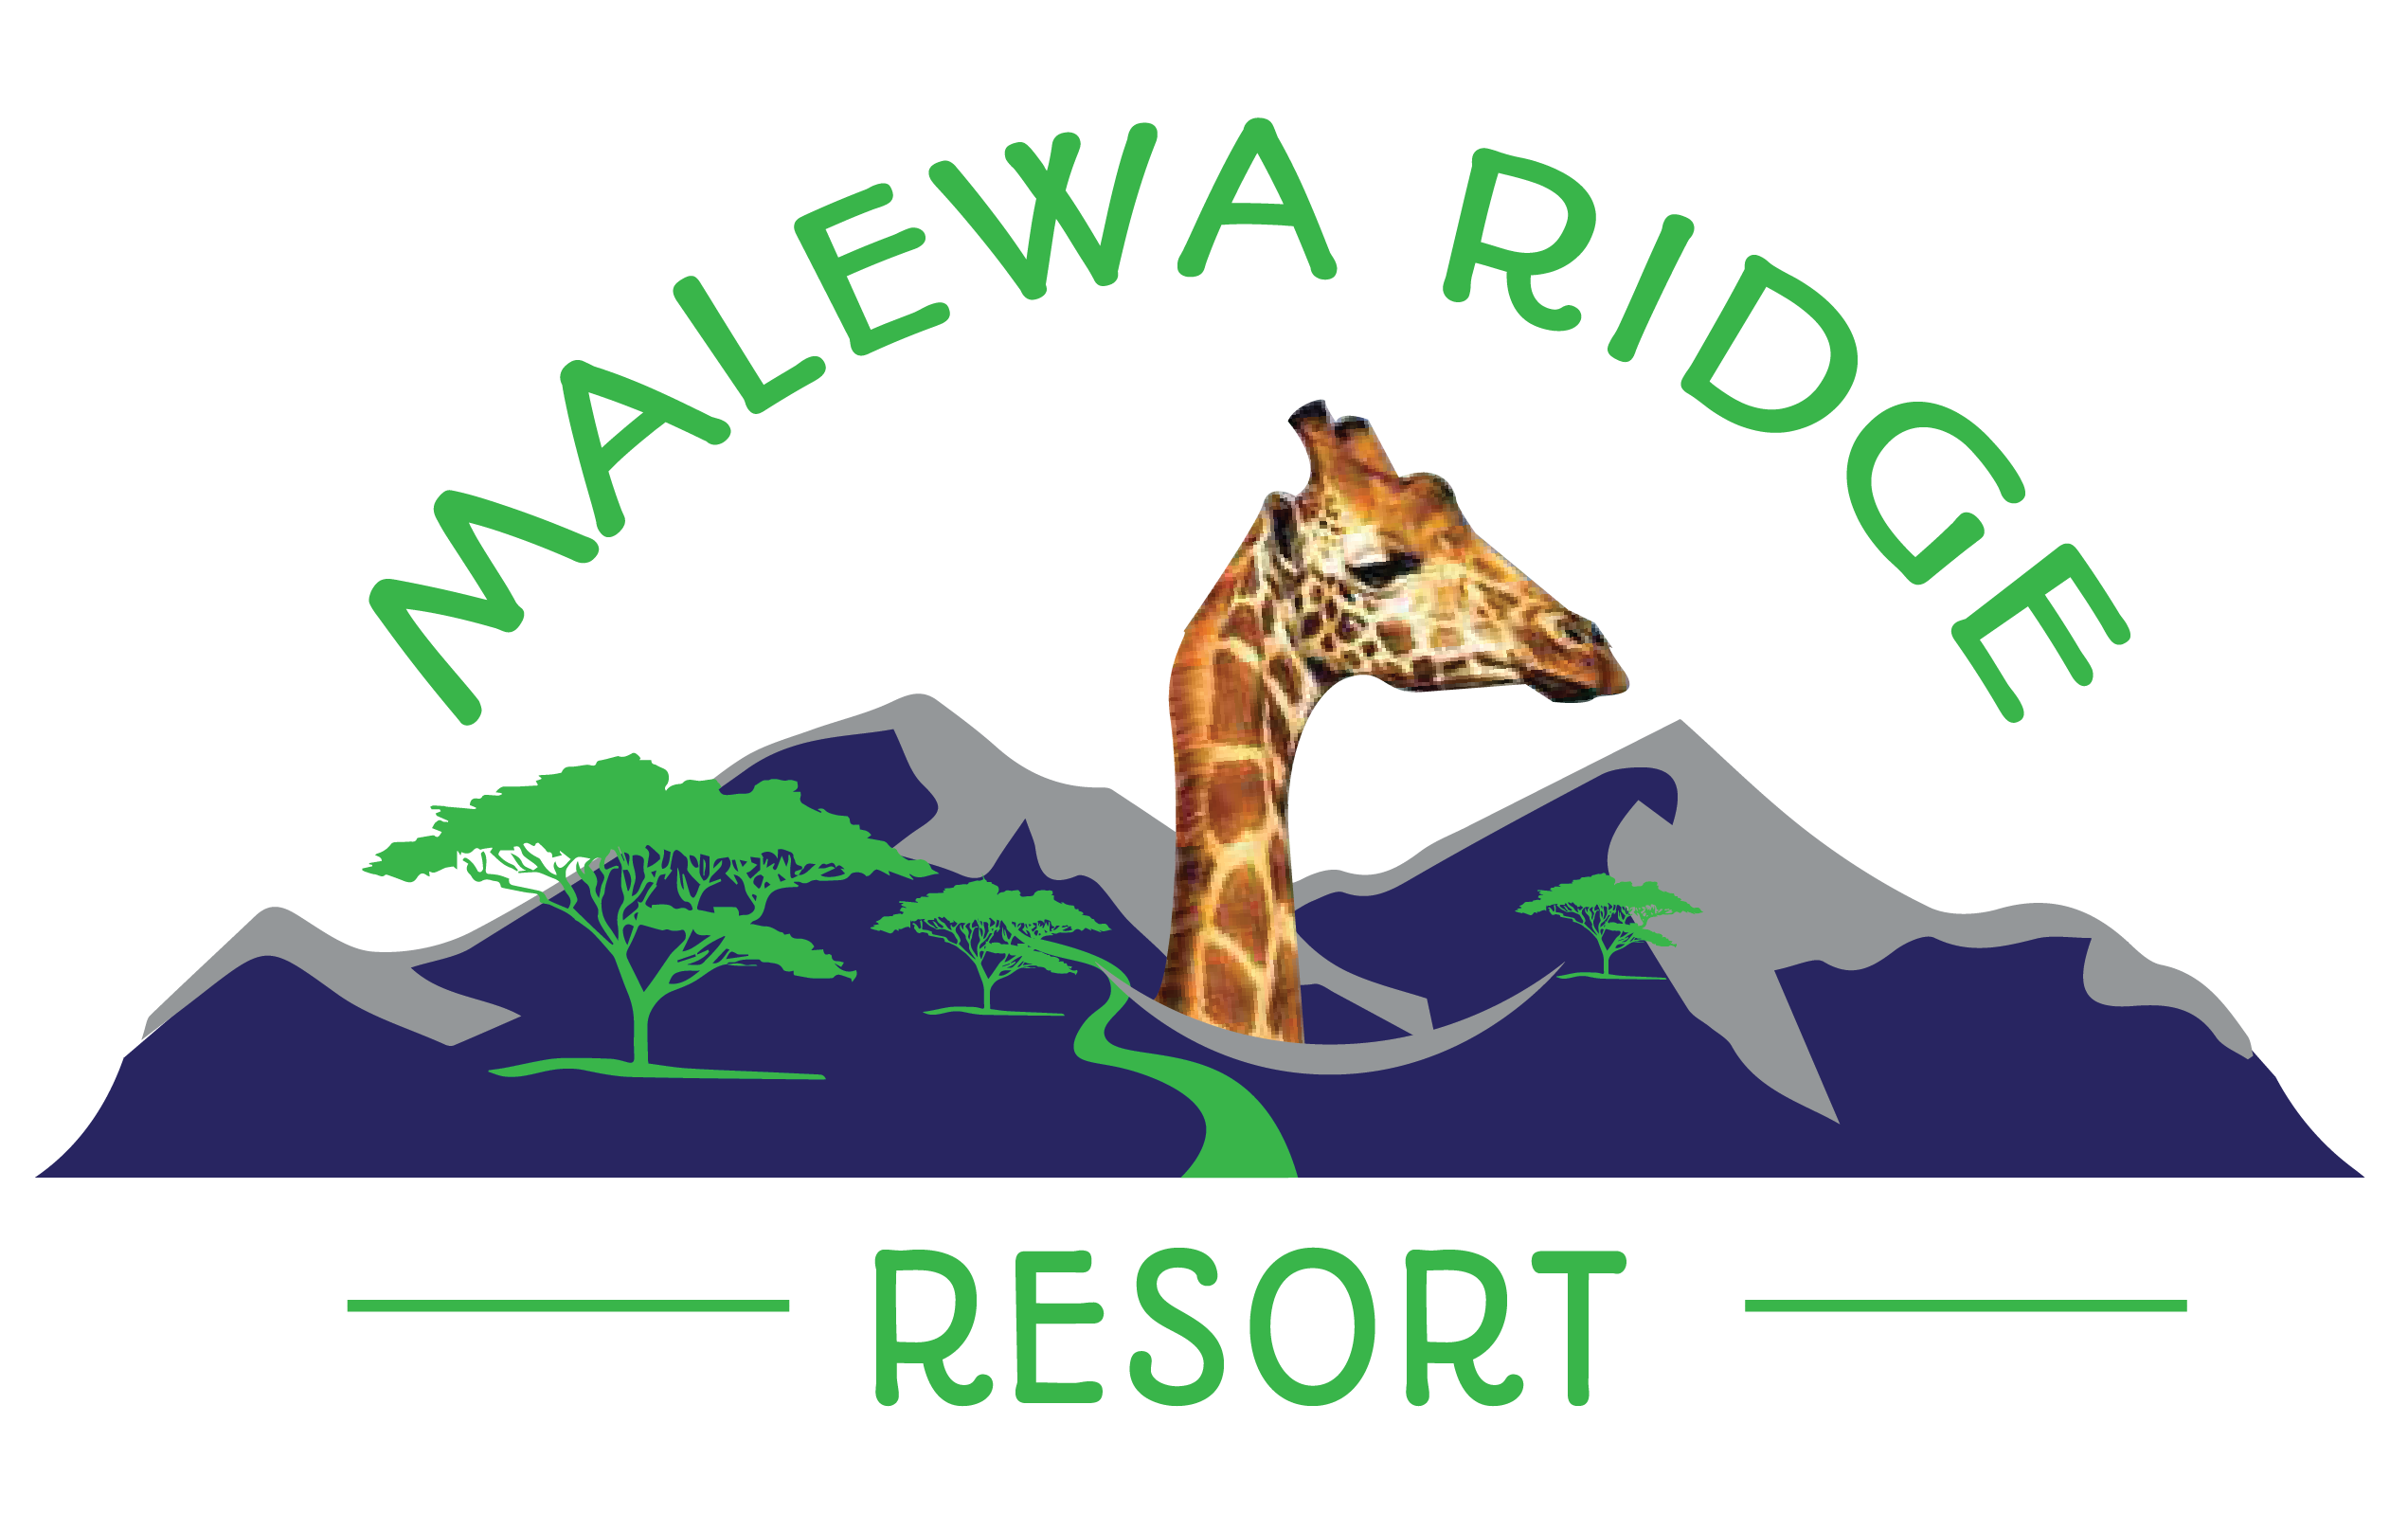 Malewa Ridge Resort